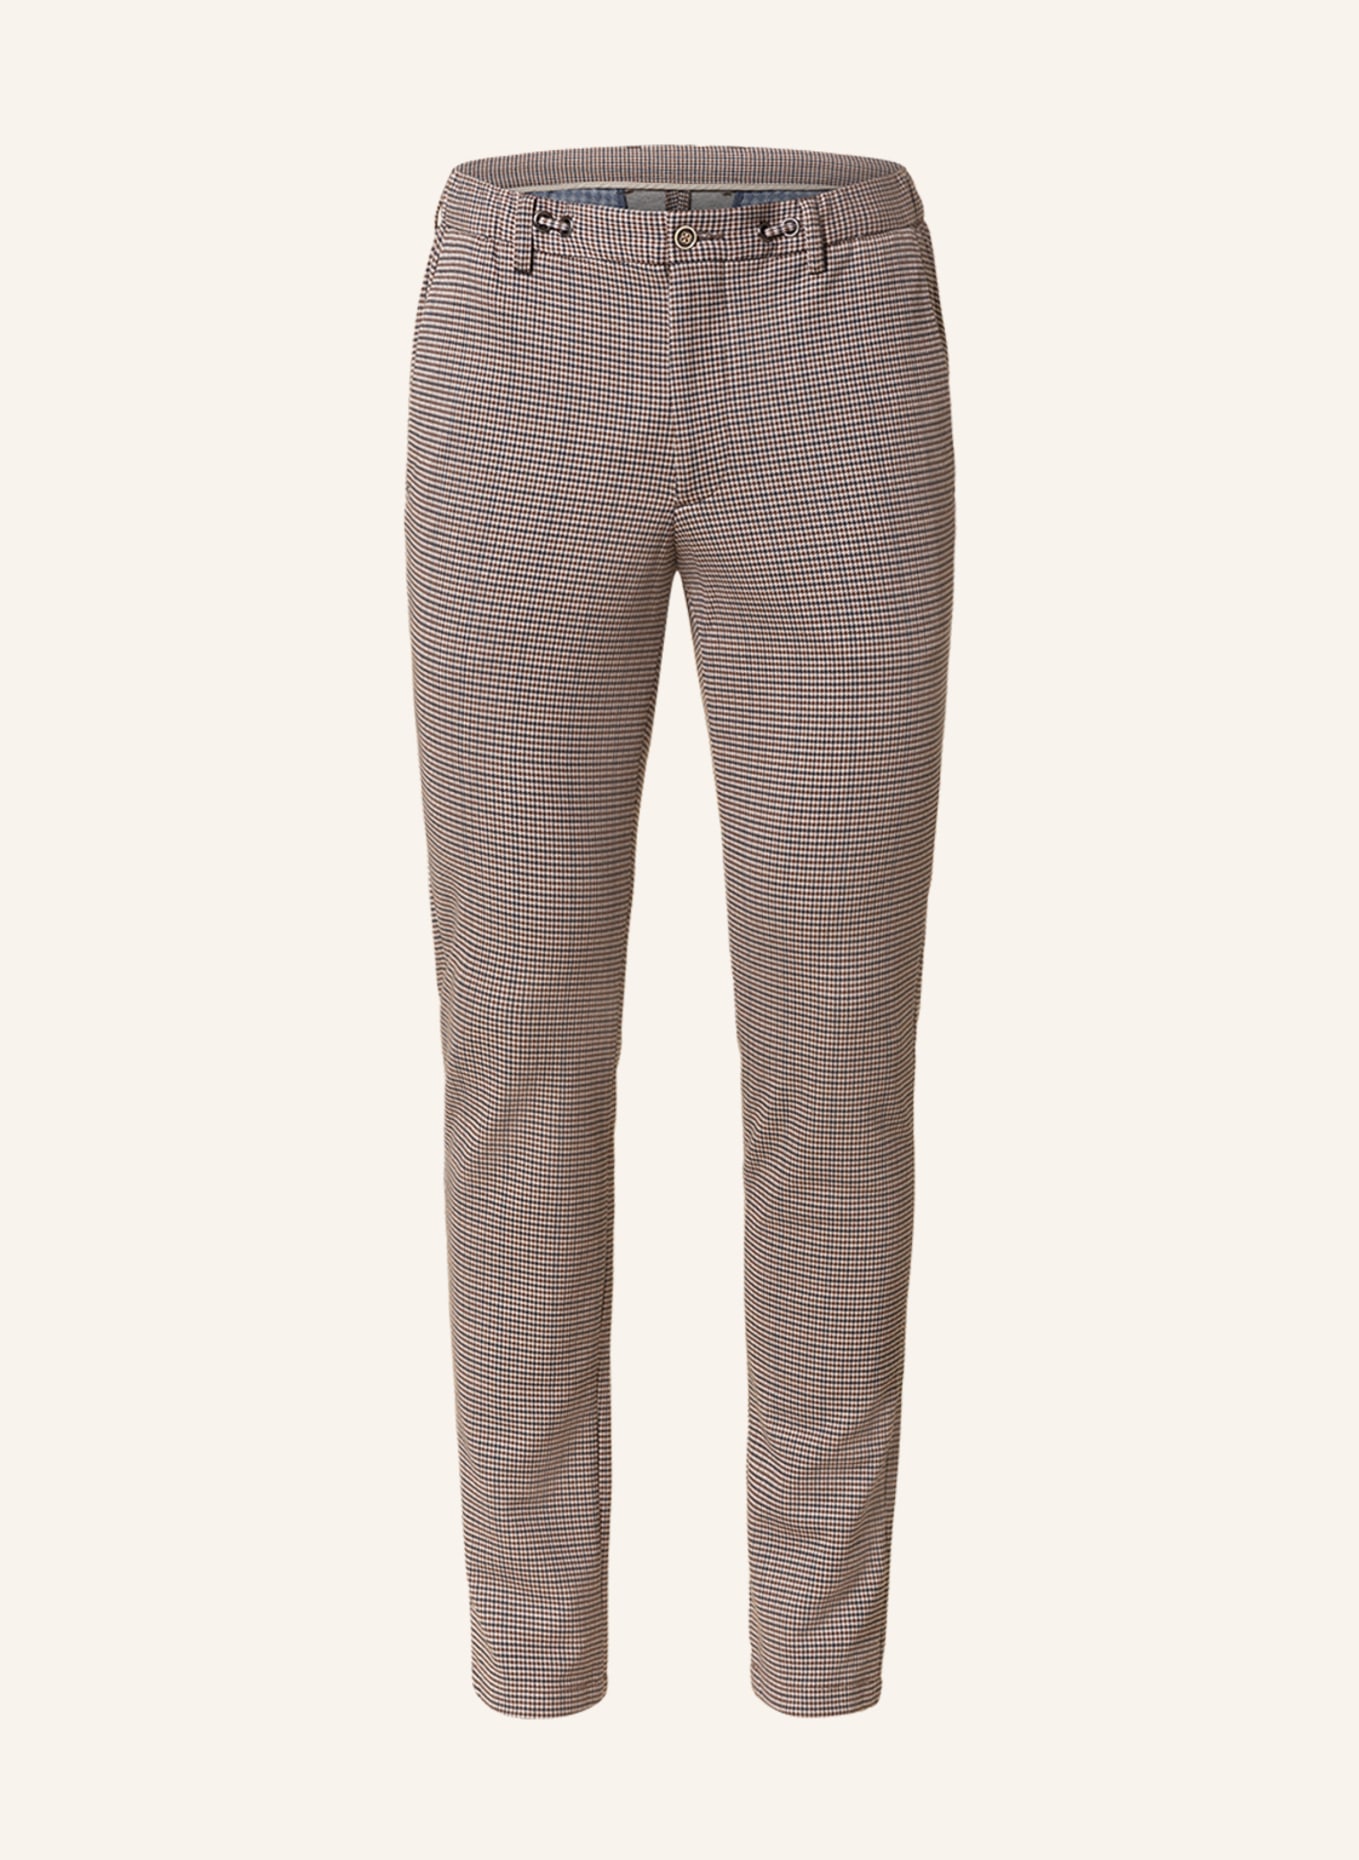 PAUL Suit trousers slim fit, Color: 360 Beige Tricol (Image 1)